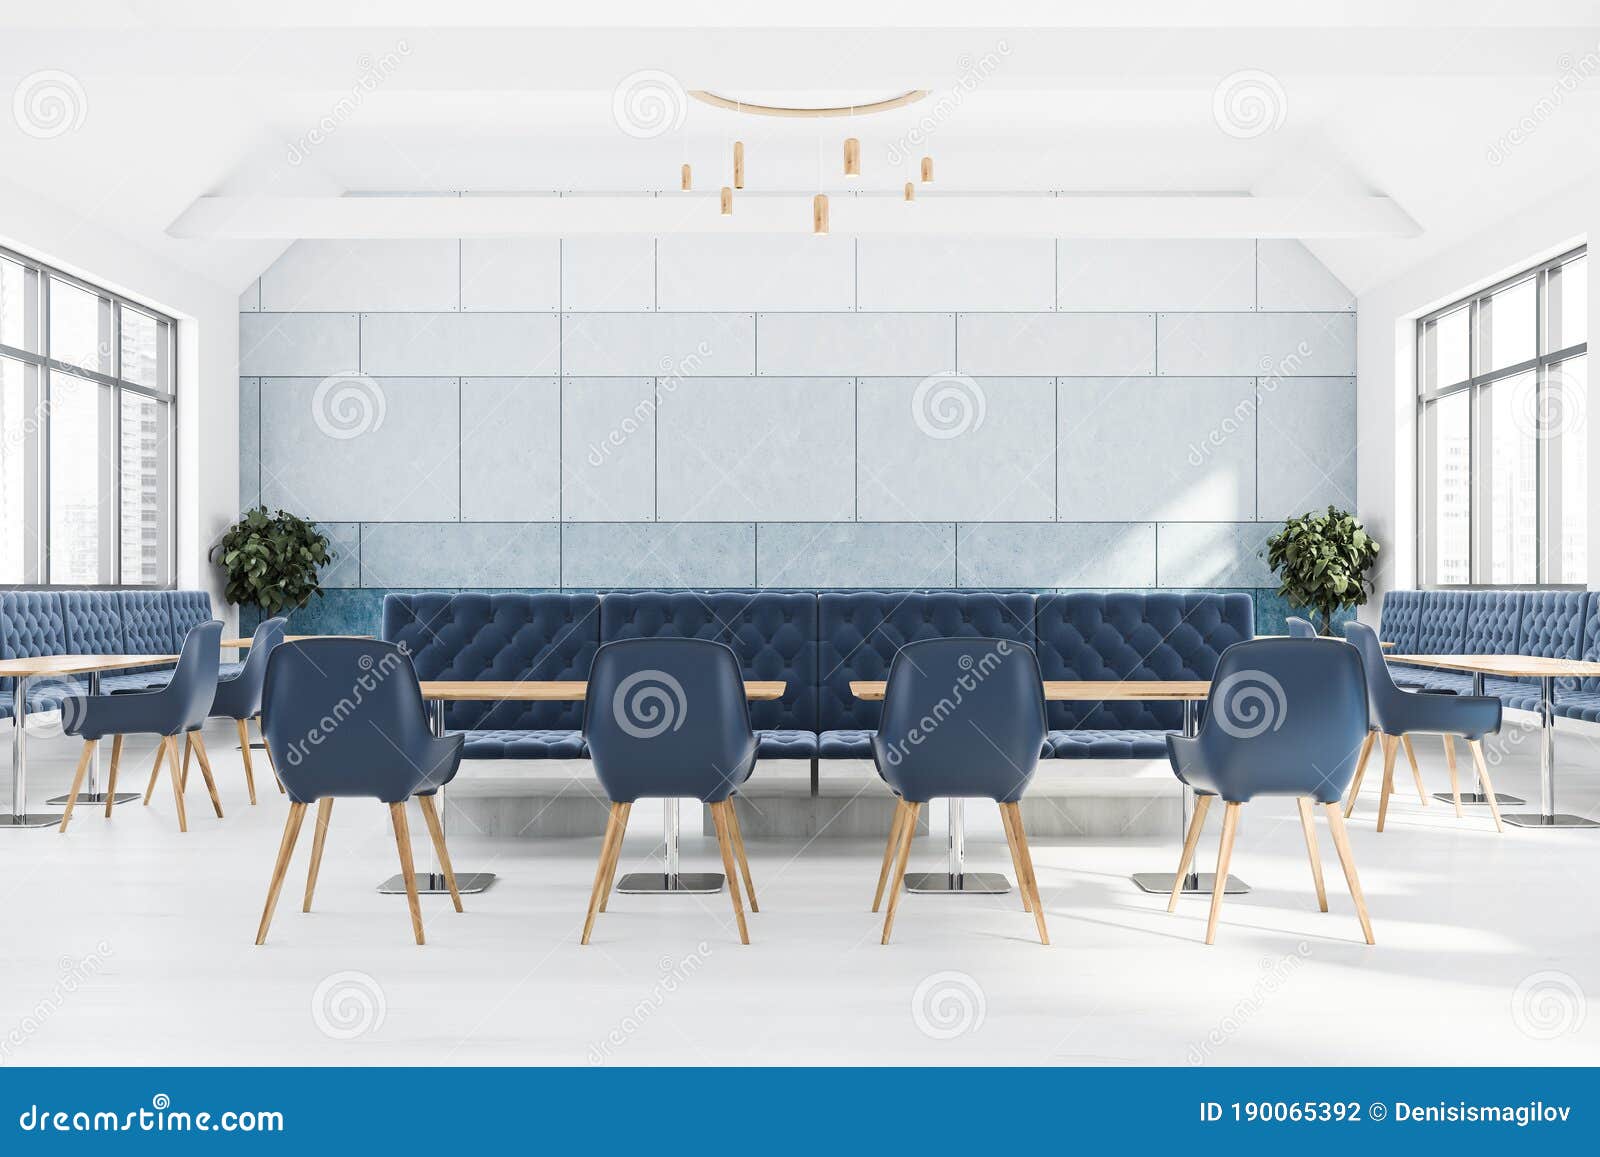 ресторан с синим интерьером